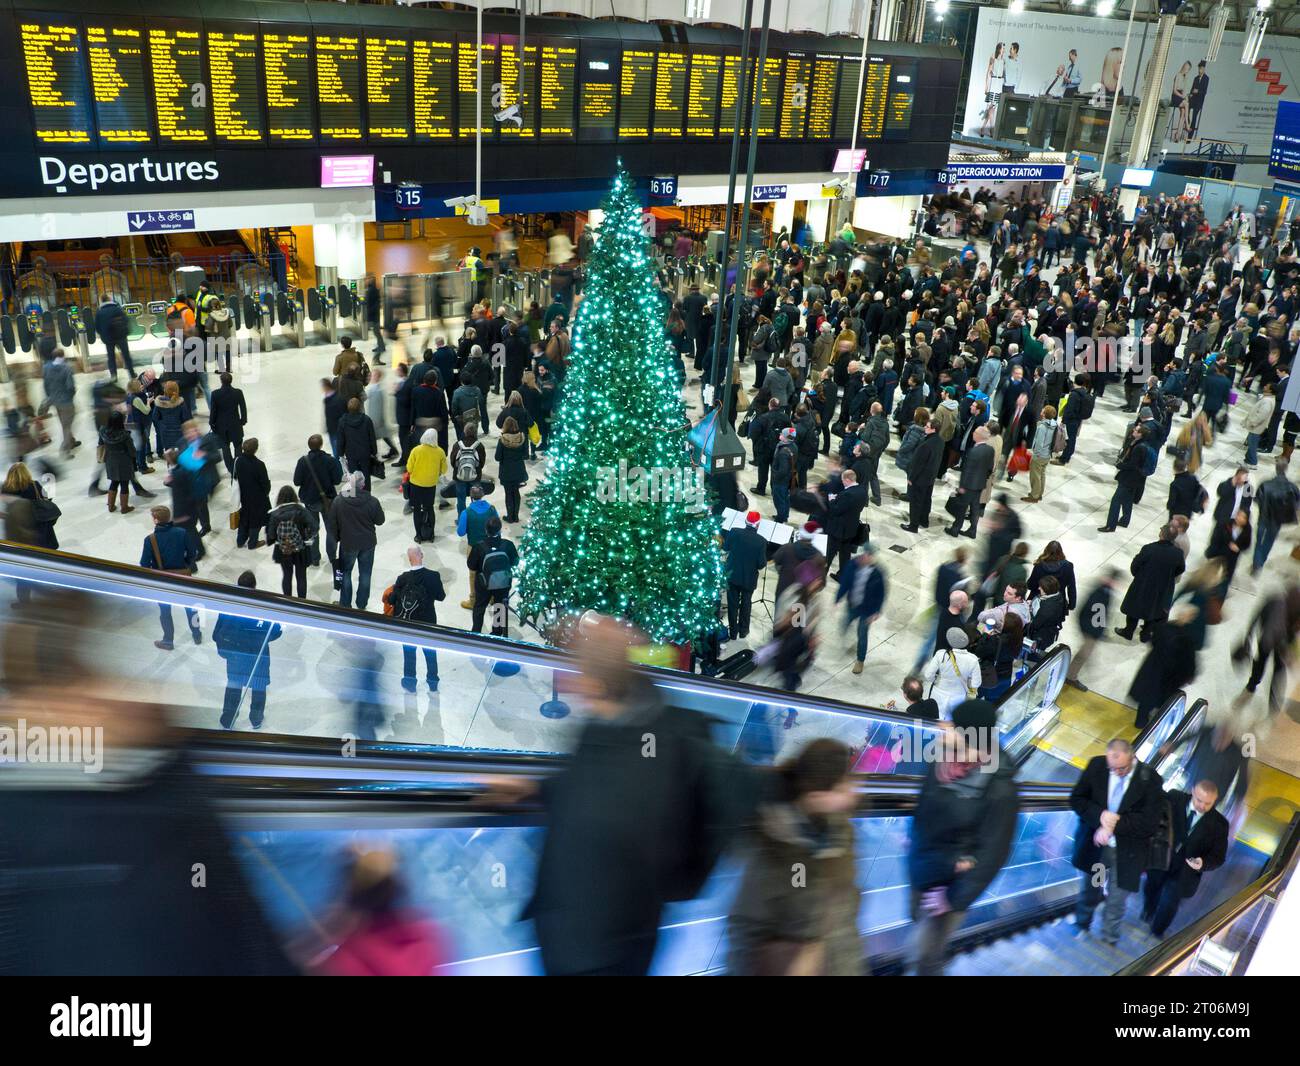 VIAGGIO NATALIZIO Waterloo Station con albero di Natale, folle di pendolari e famiglie che guardano le schermate di informazioni sulla partenza, tornare a casa per il Natale invernale natalizio natalizio vacanze di viaggio Waterloo Station Londra Regno Unito Foto Stock